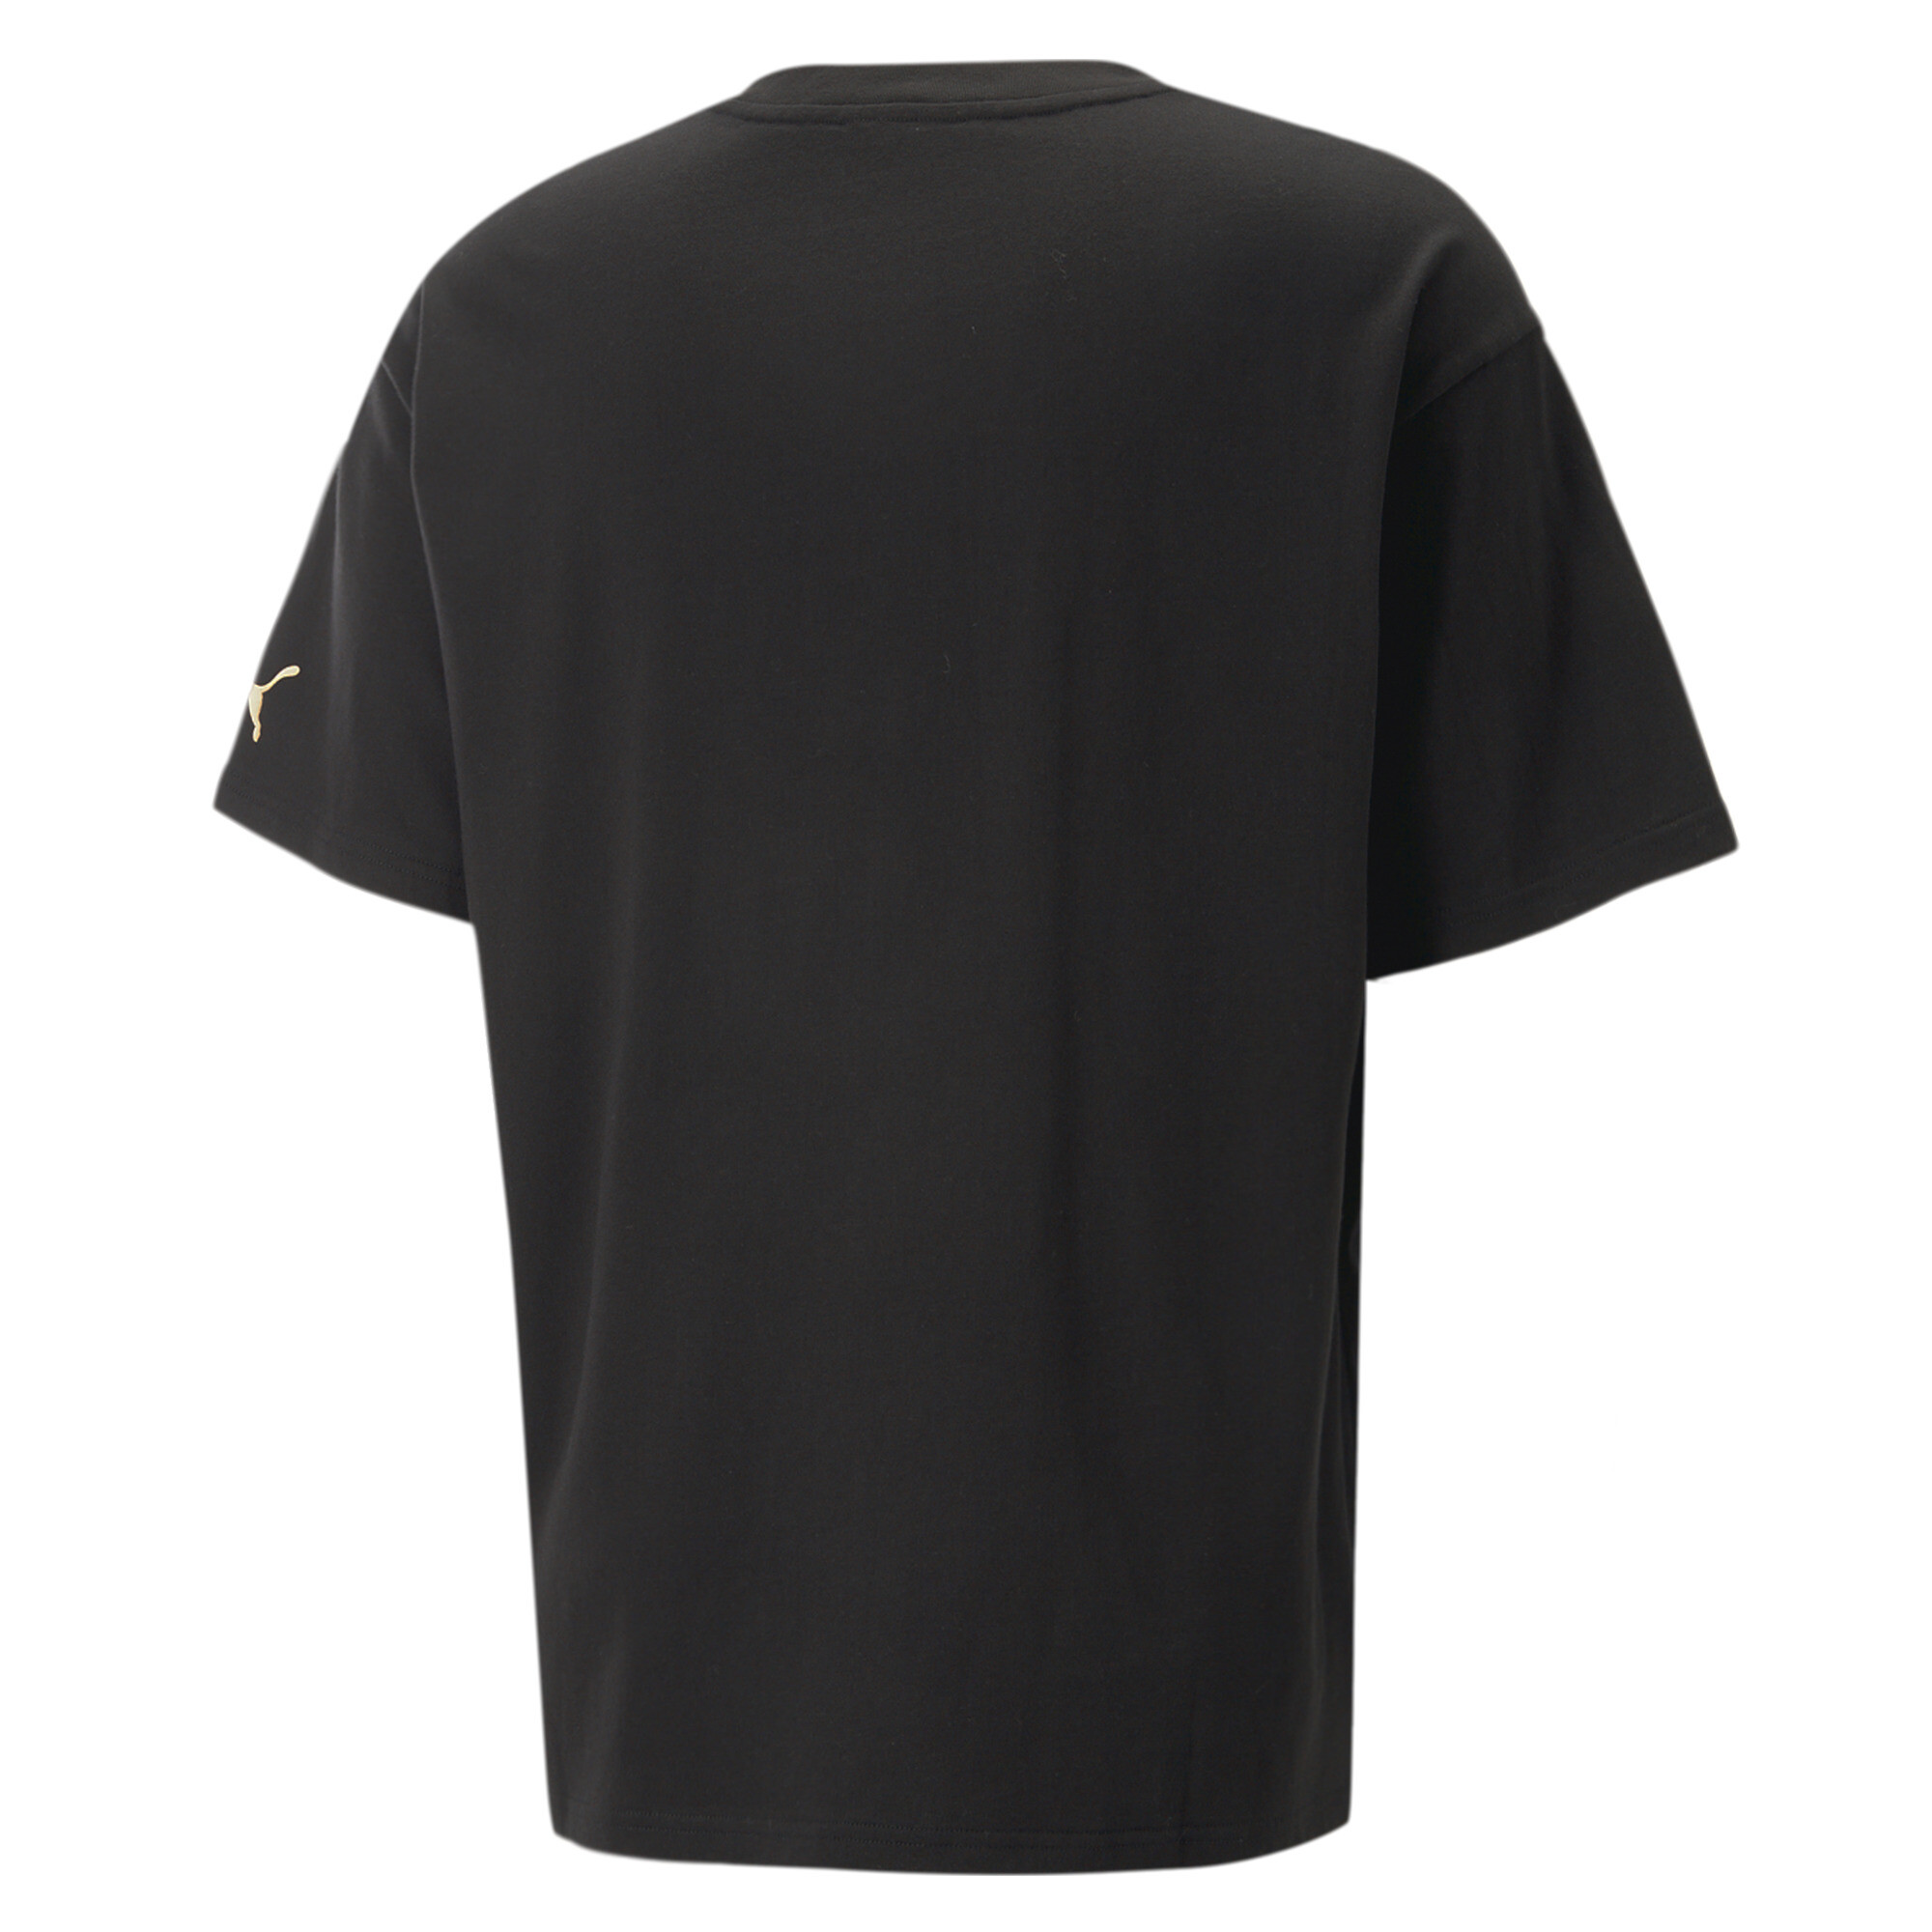 Men's PUMA X Melo Boxy Basketball T-Shirt Men In 10 - Black, Size XL